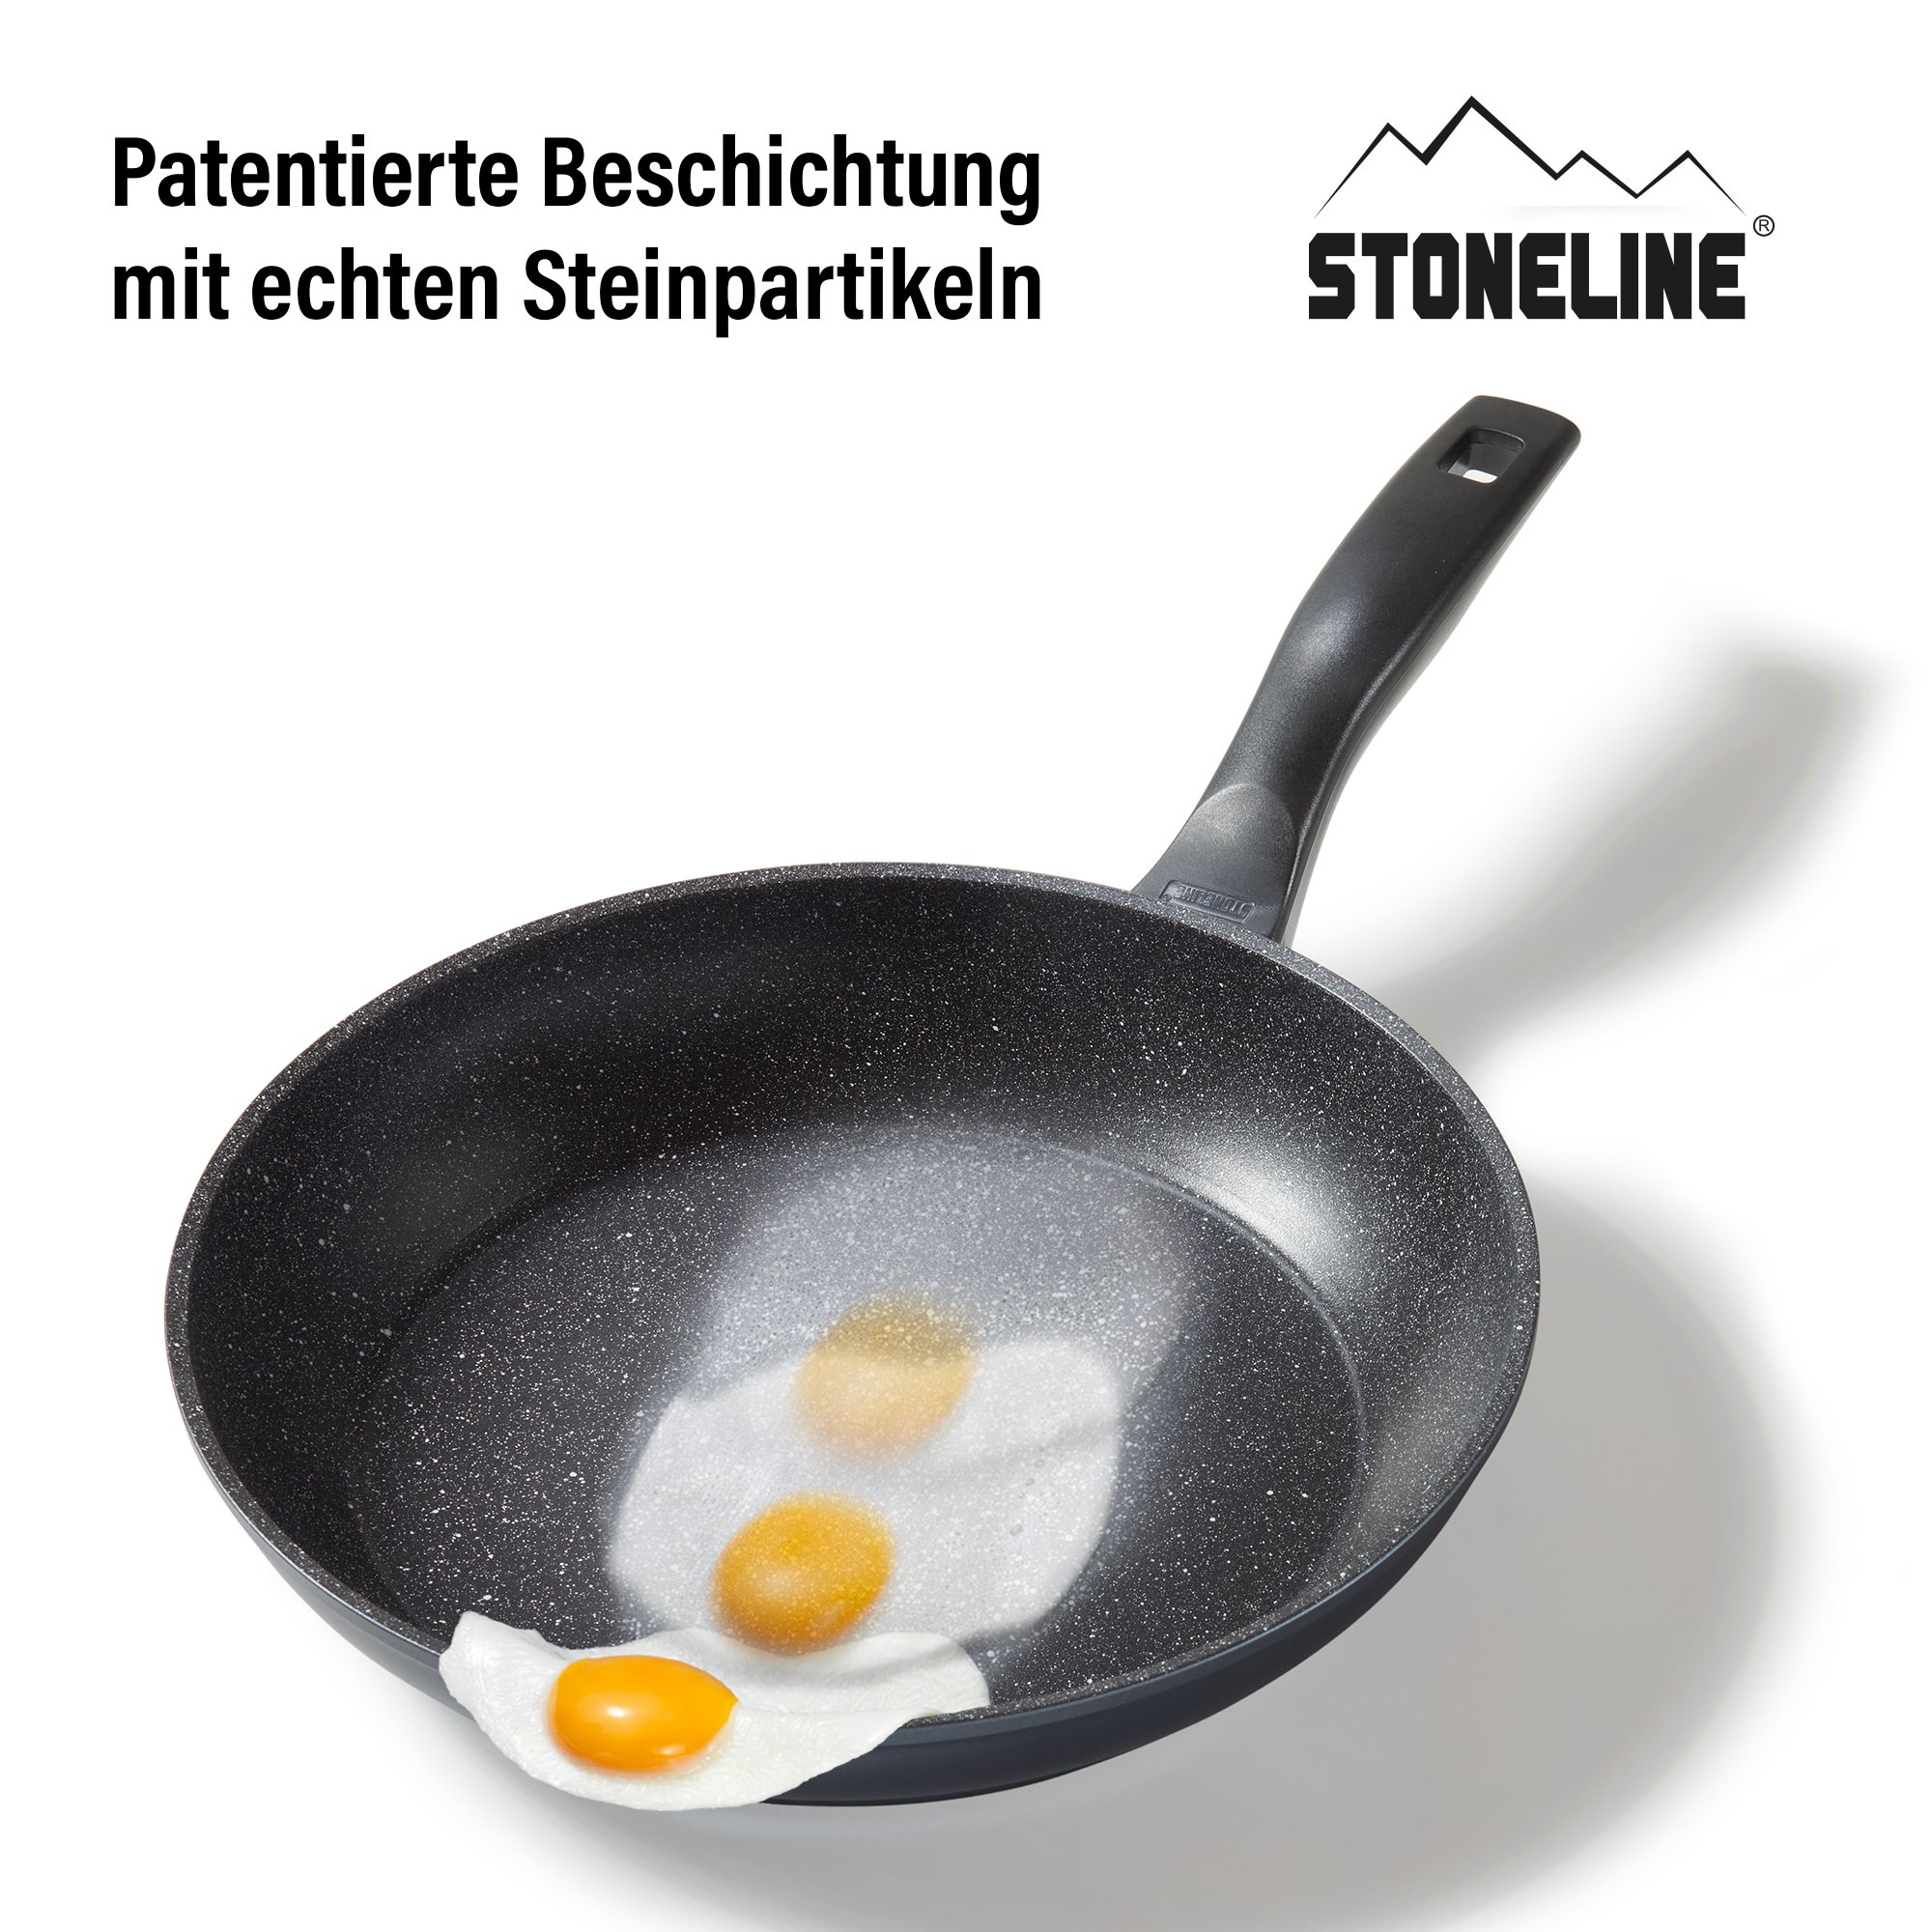 STONELINE® Bratpfanne 28 cm, Made in Germany, antihaftbeschichtete Pfanne, Induktion geeignet